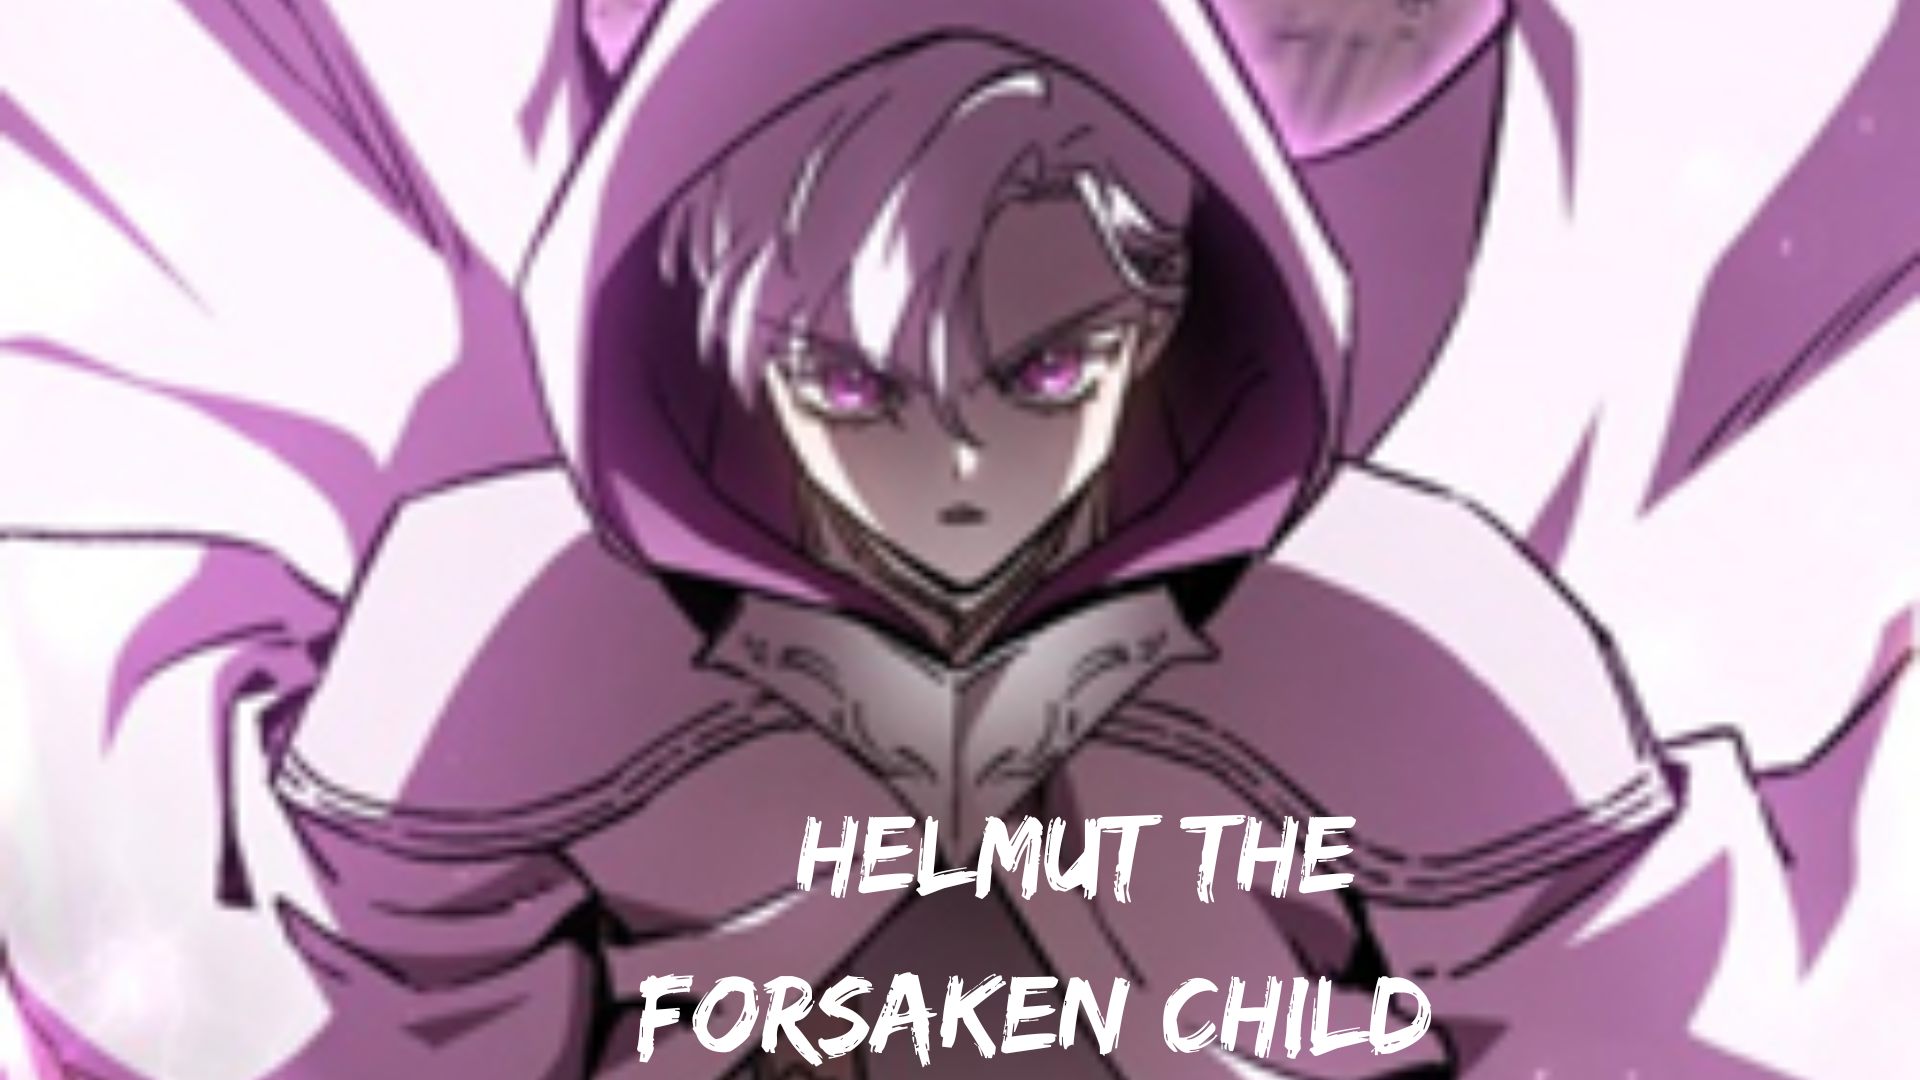 Helmut the Forsaken Child,